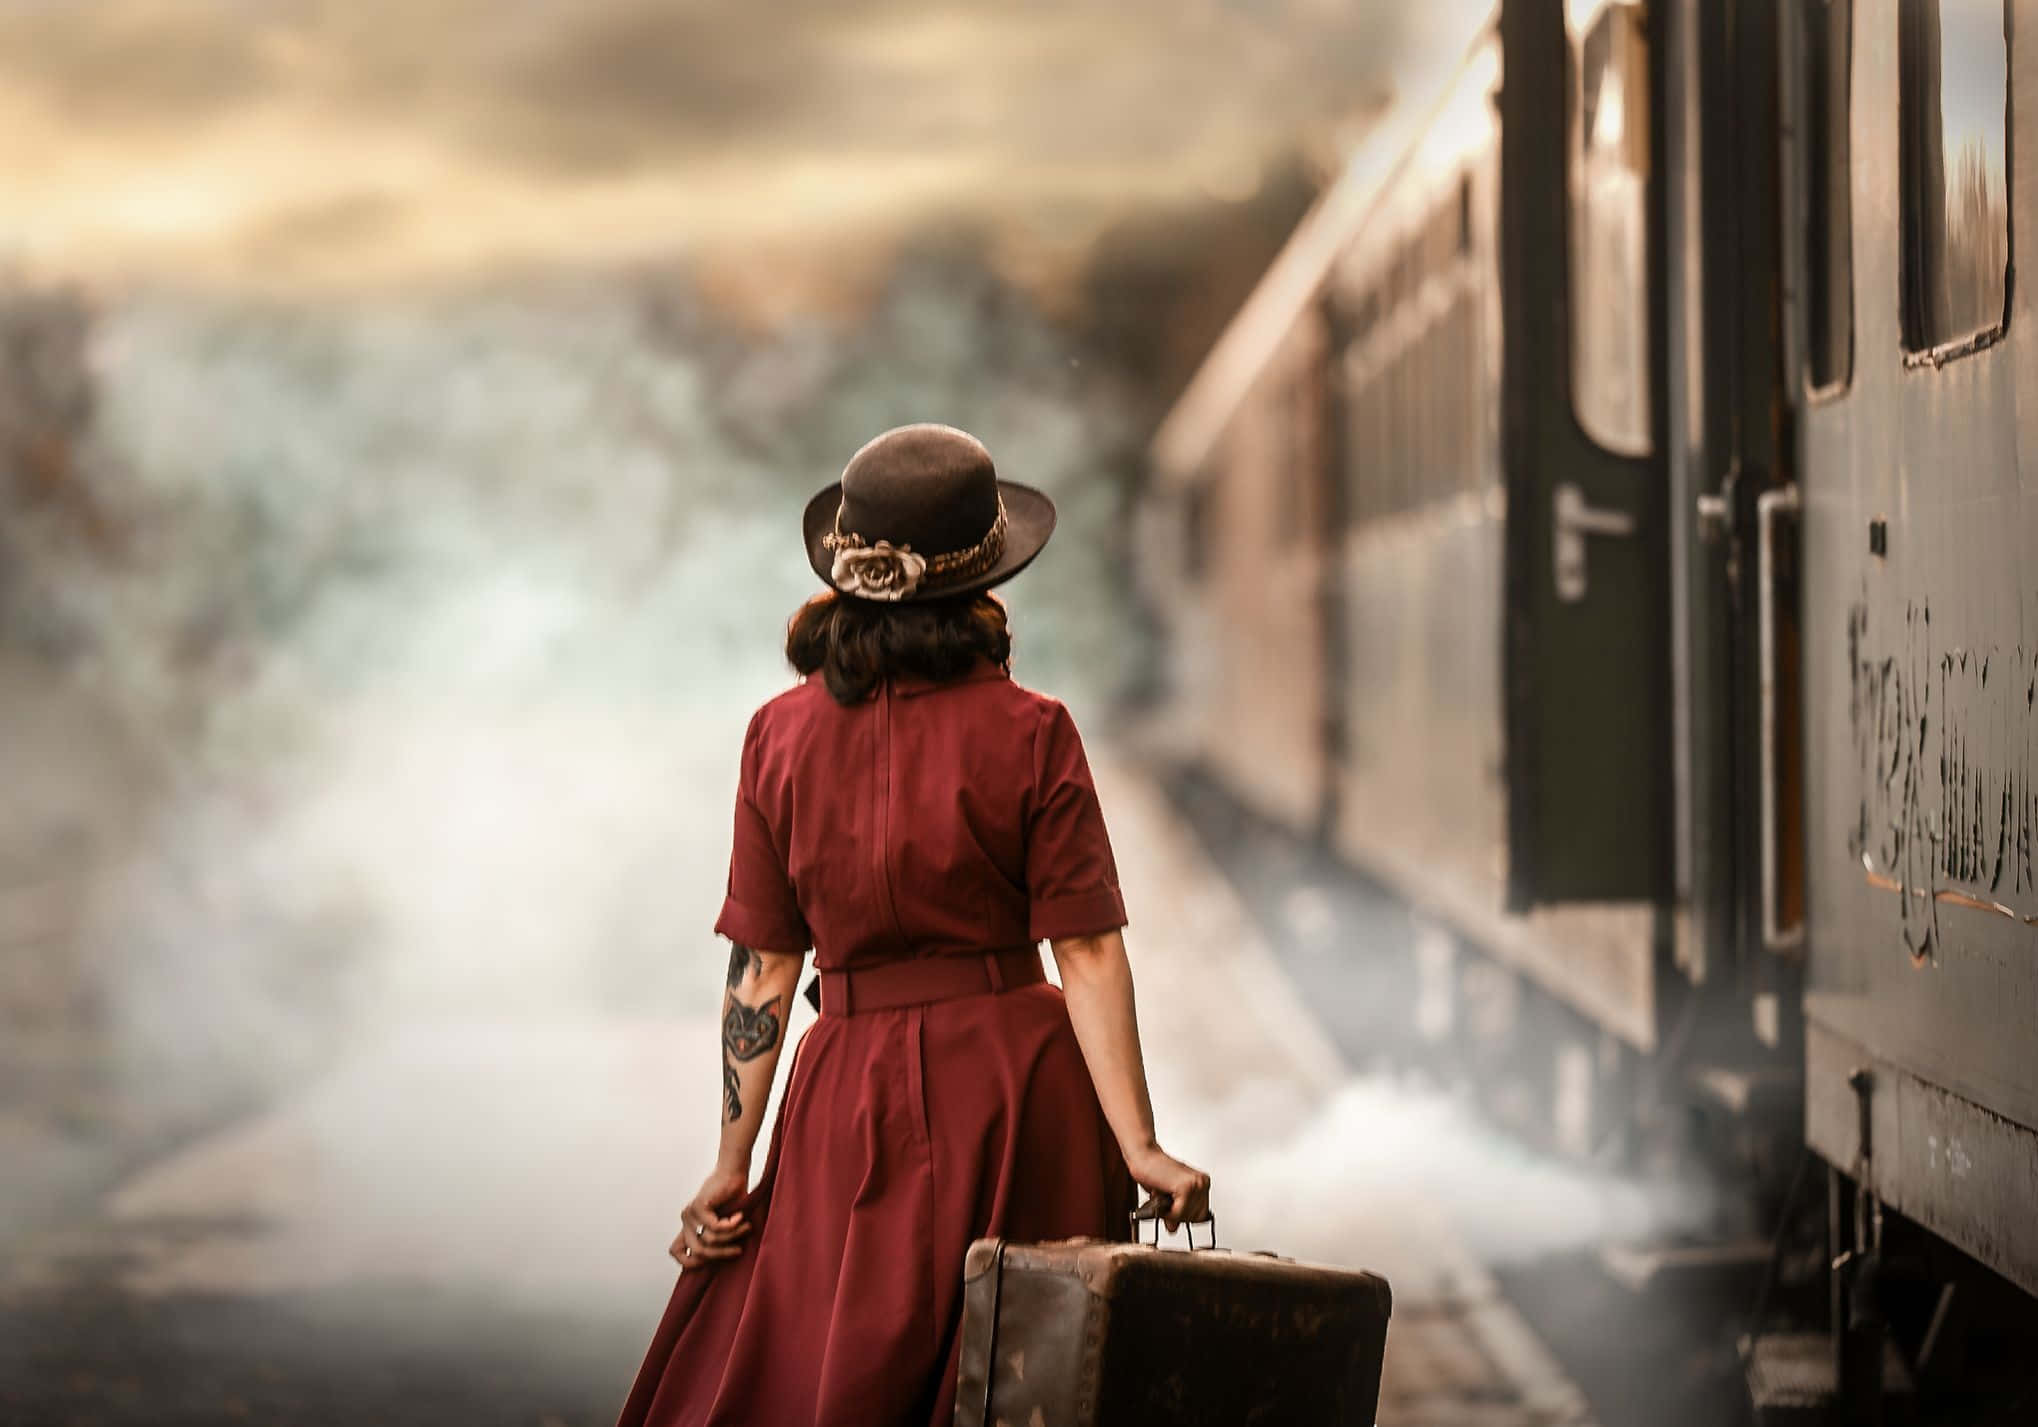 Einefrau In Einem Roten Kleid Steht Neben Einem Zug.